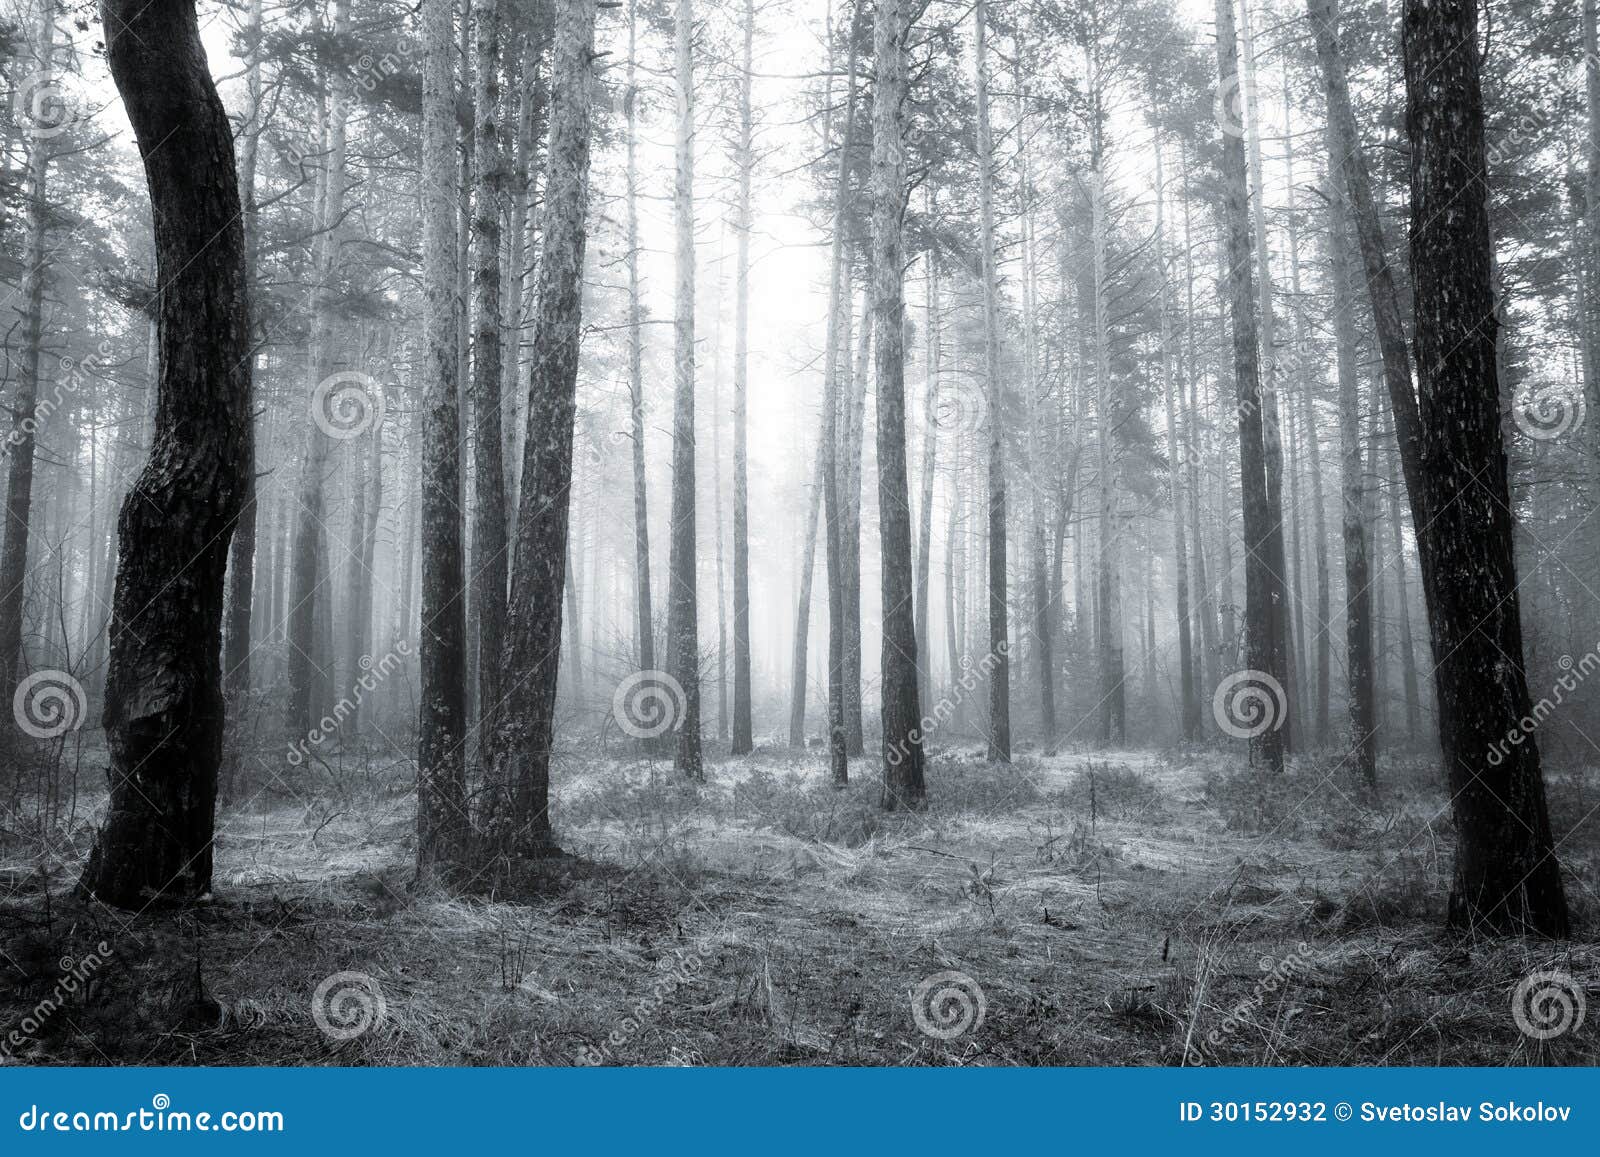 Bw森林. 春天日出的鬼的抽象黑白老保守森林